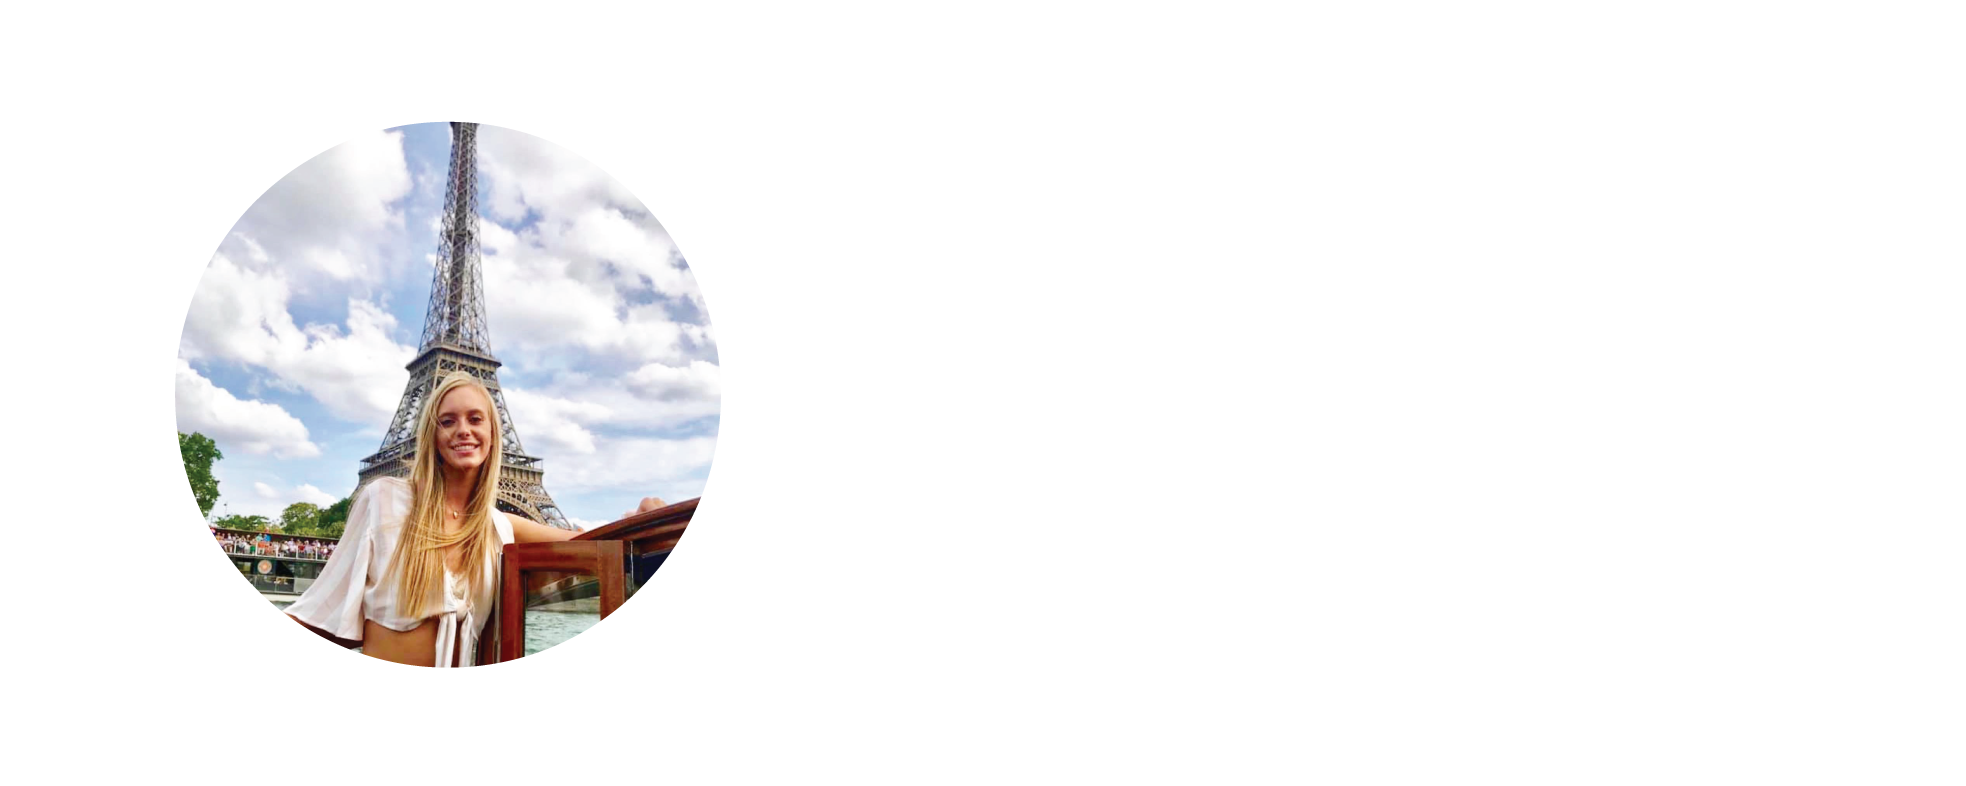 Client-testimonials-paris.png